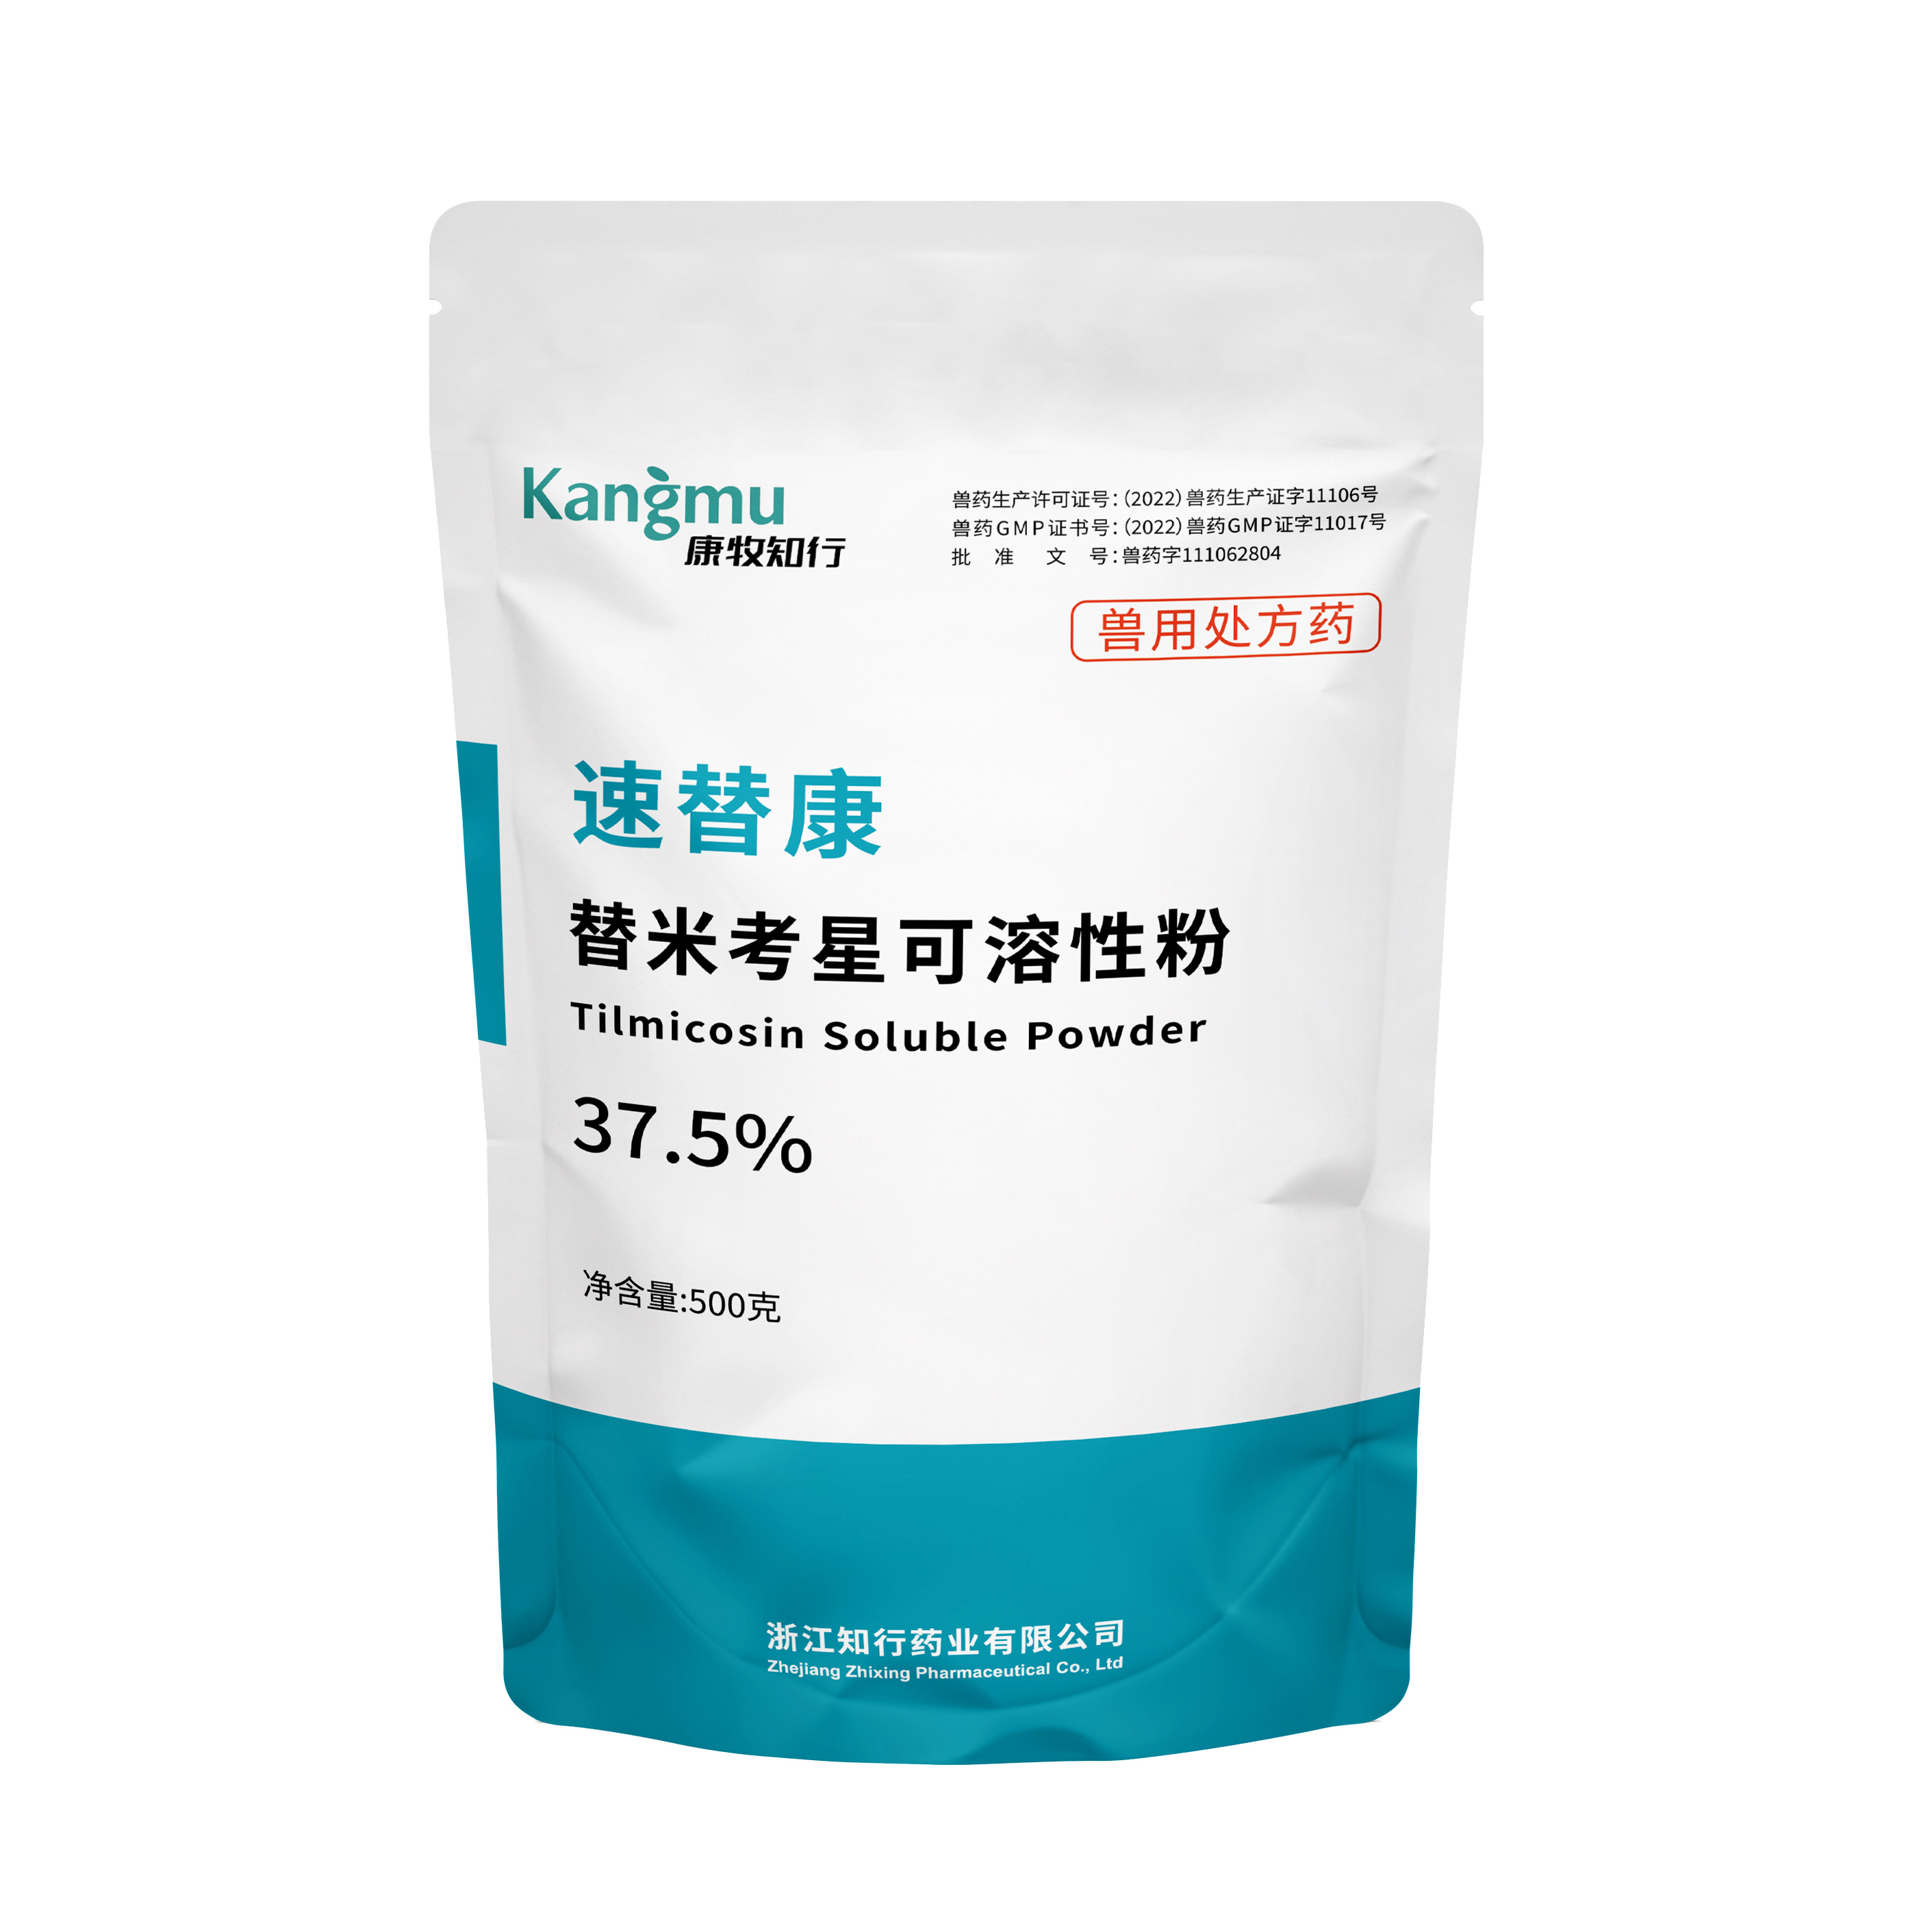 37.5% tilmicosin soluble powder